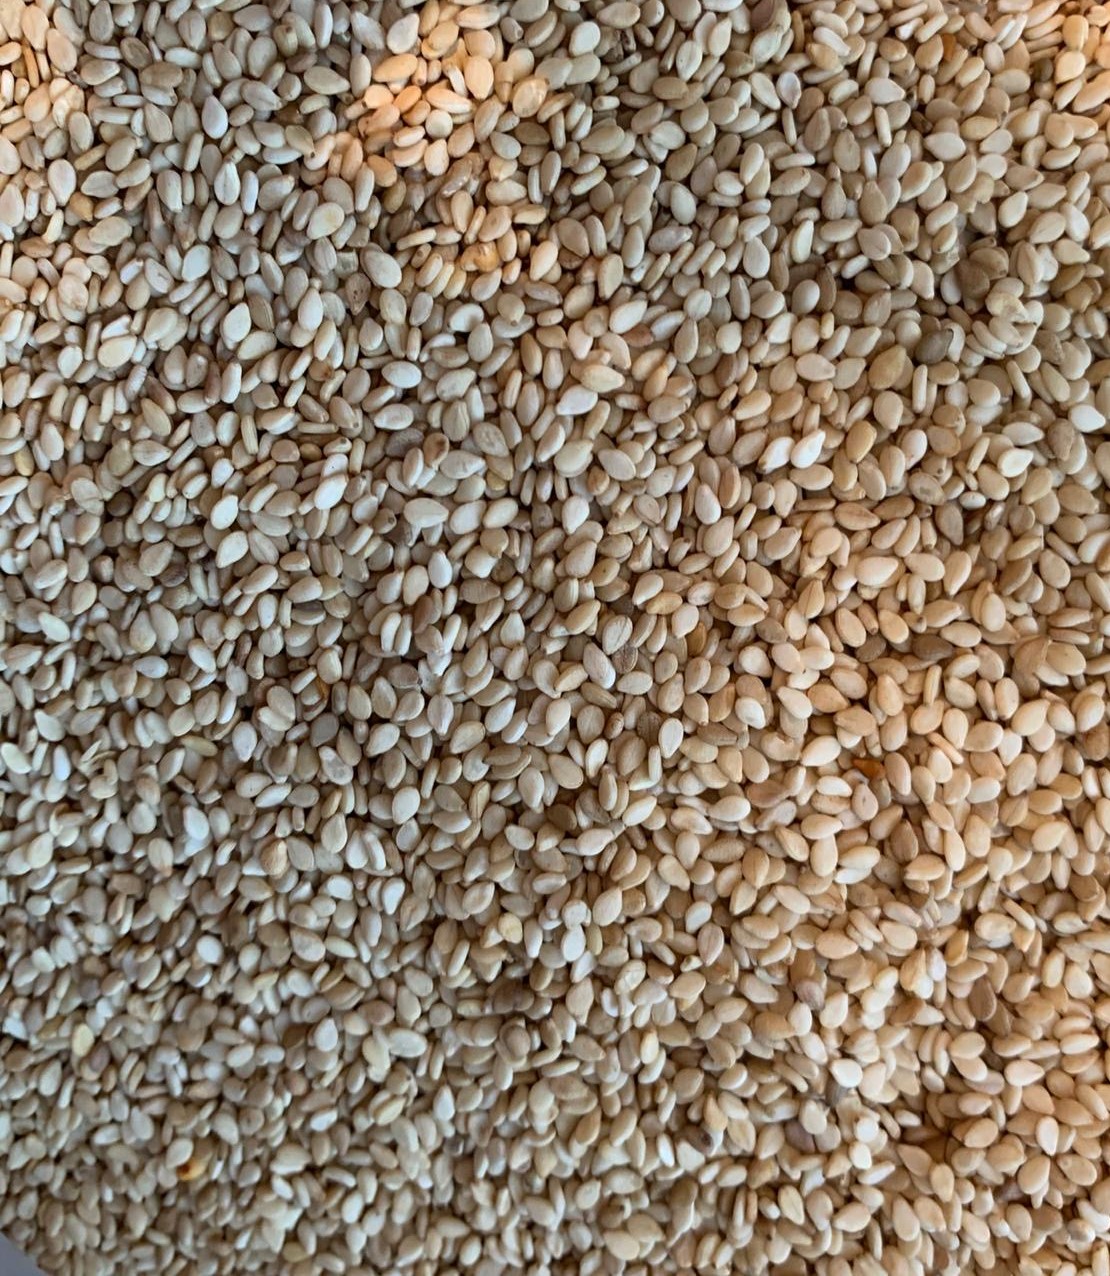 White Sesame seeds